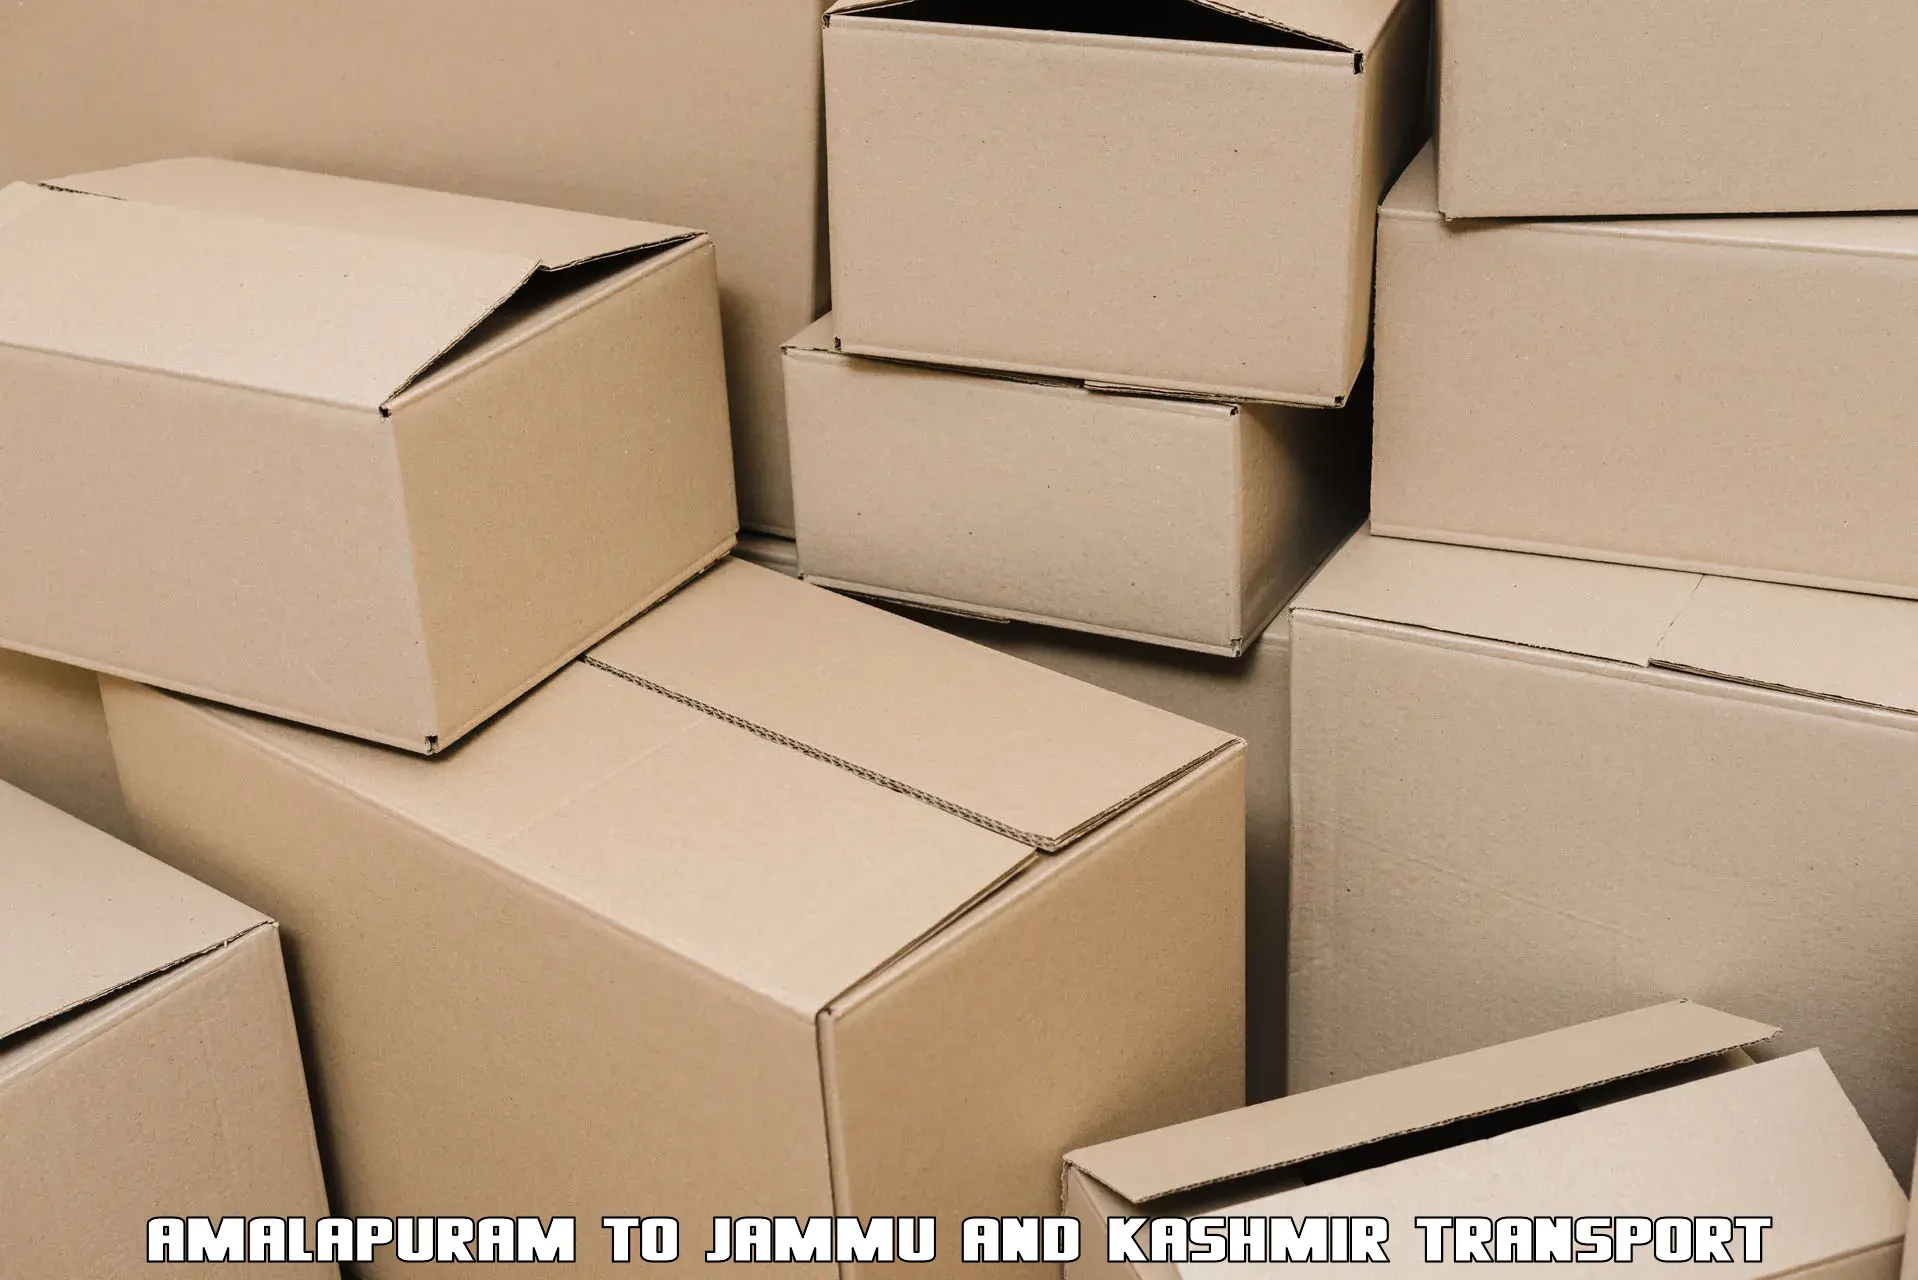 Package delivery services Amalapuram to Kupwara